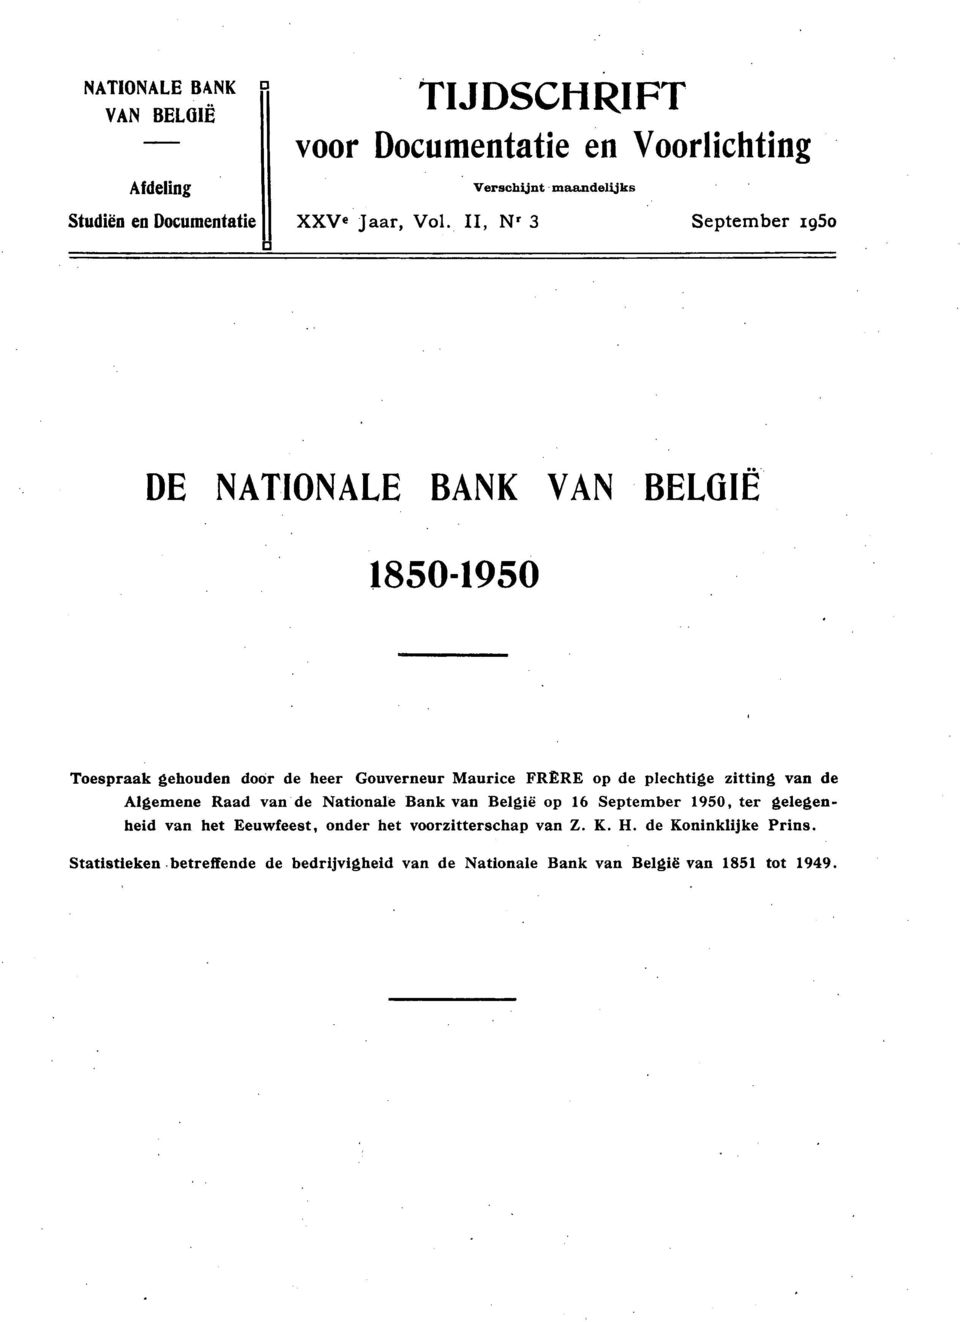 plechtige zitting van de Algemene Raad van de Nationale Bank van België op 16 September 1950, ter gelegenheid van het Eeuwfeest, onder het